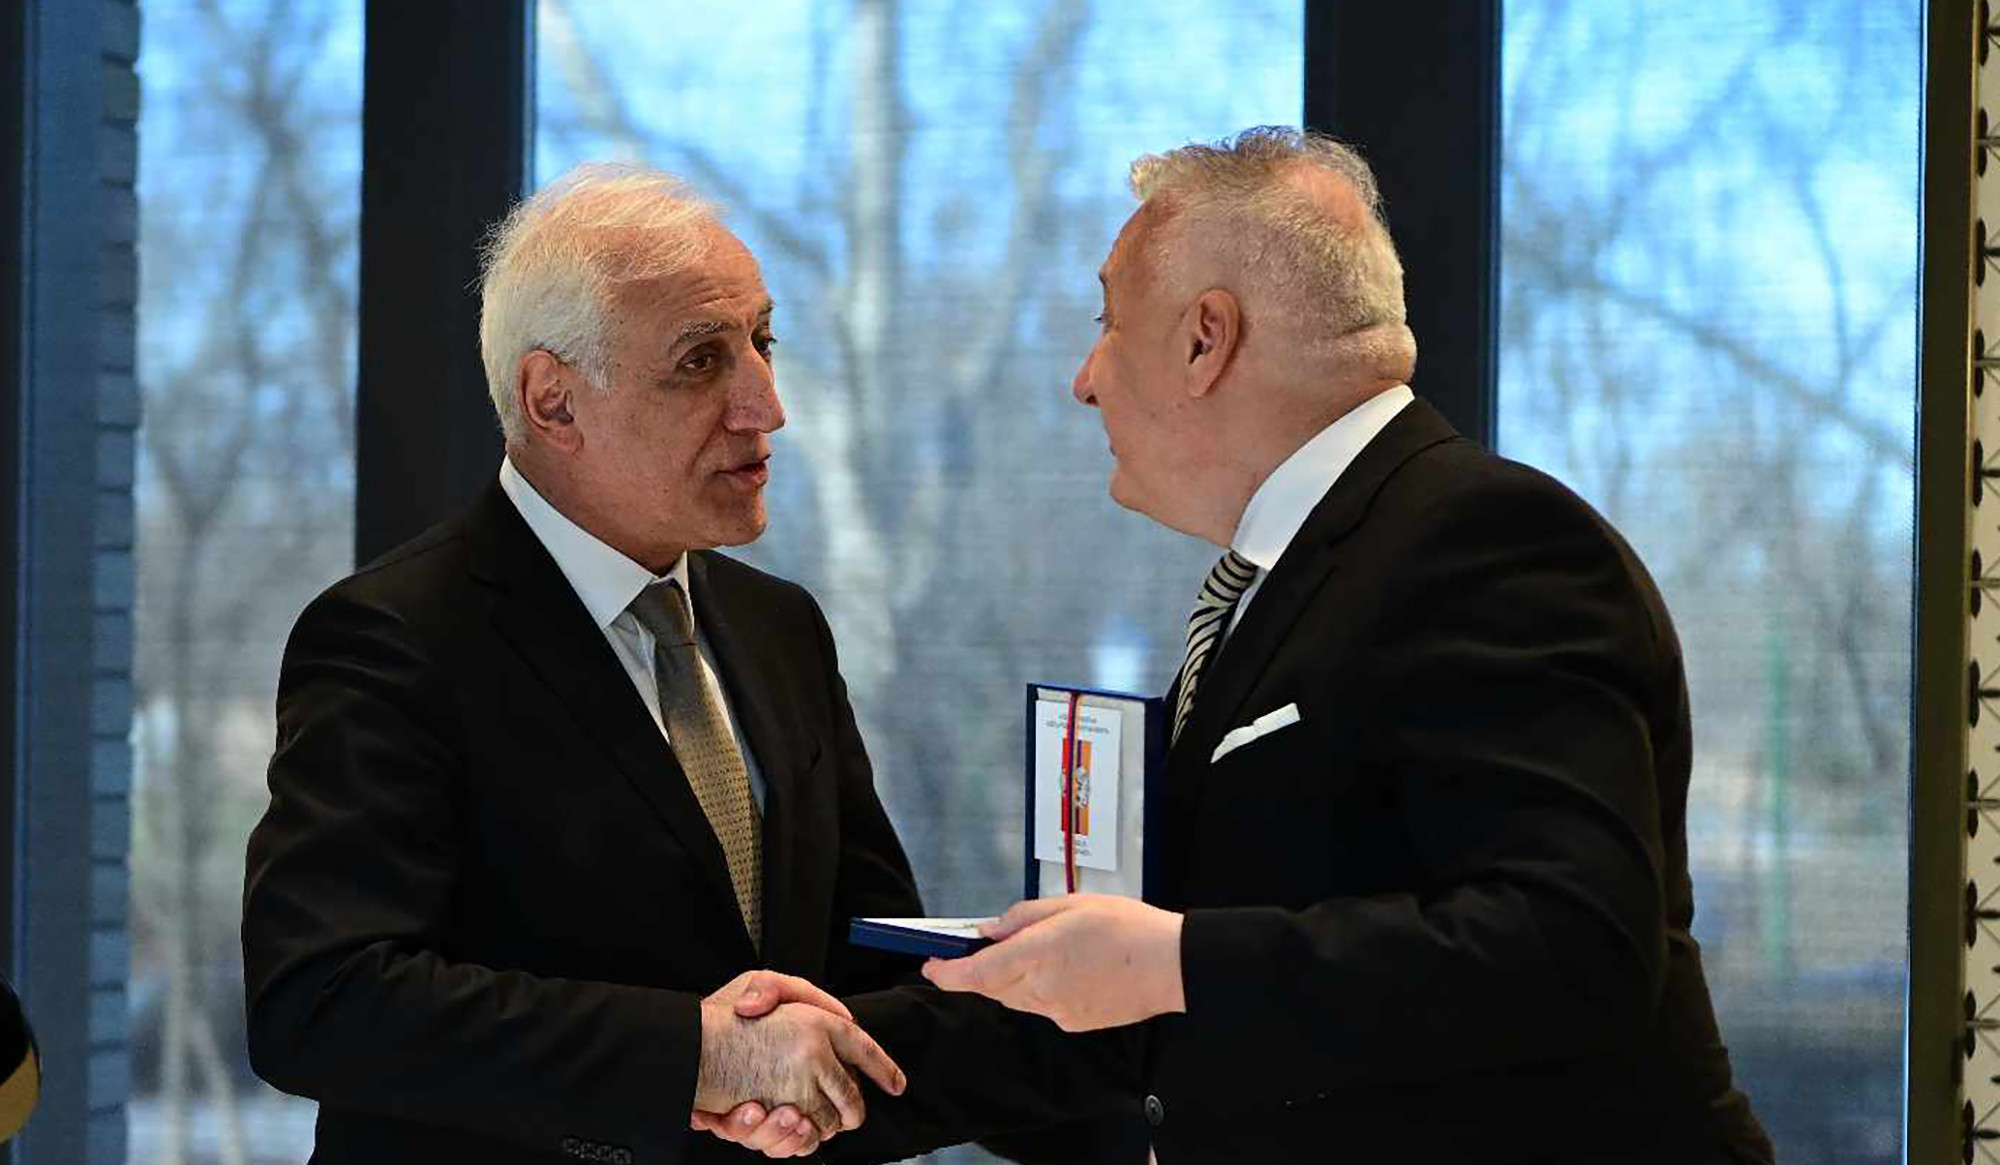 Ի պատիվ պաշտոնական այցով Հունգարիայում գտնվող Վահագն Խաչատուրյանի՝ Հունգարիայի նախագահի անունից տրվել է պաշտոնական ճաշ